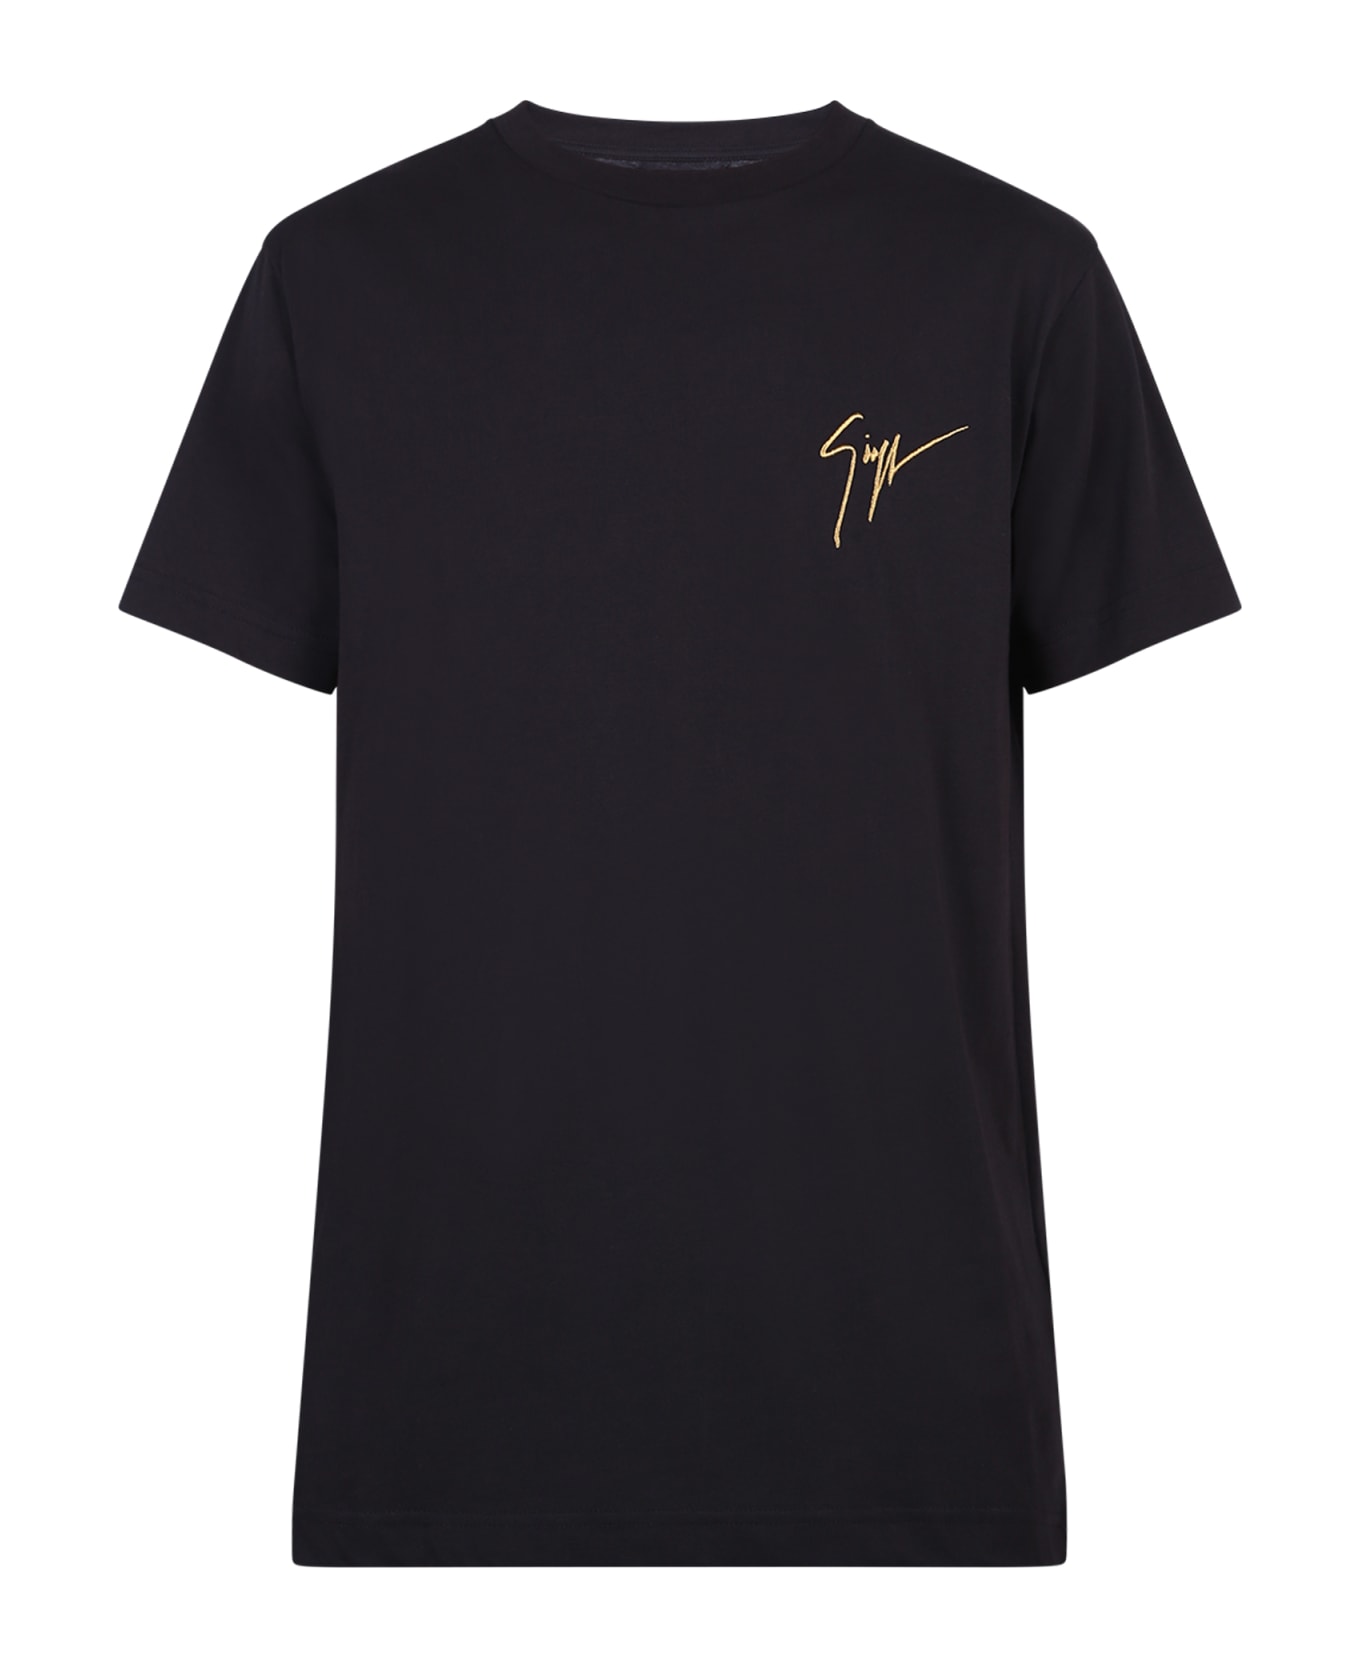 Giuseppe Zanotti Branded T-shirt - Black